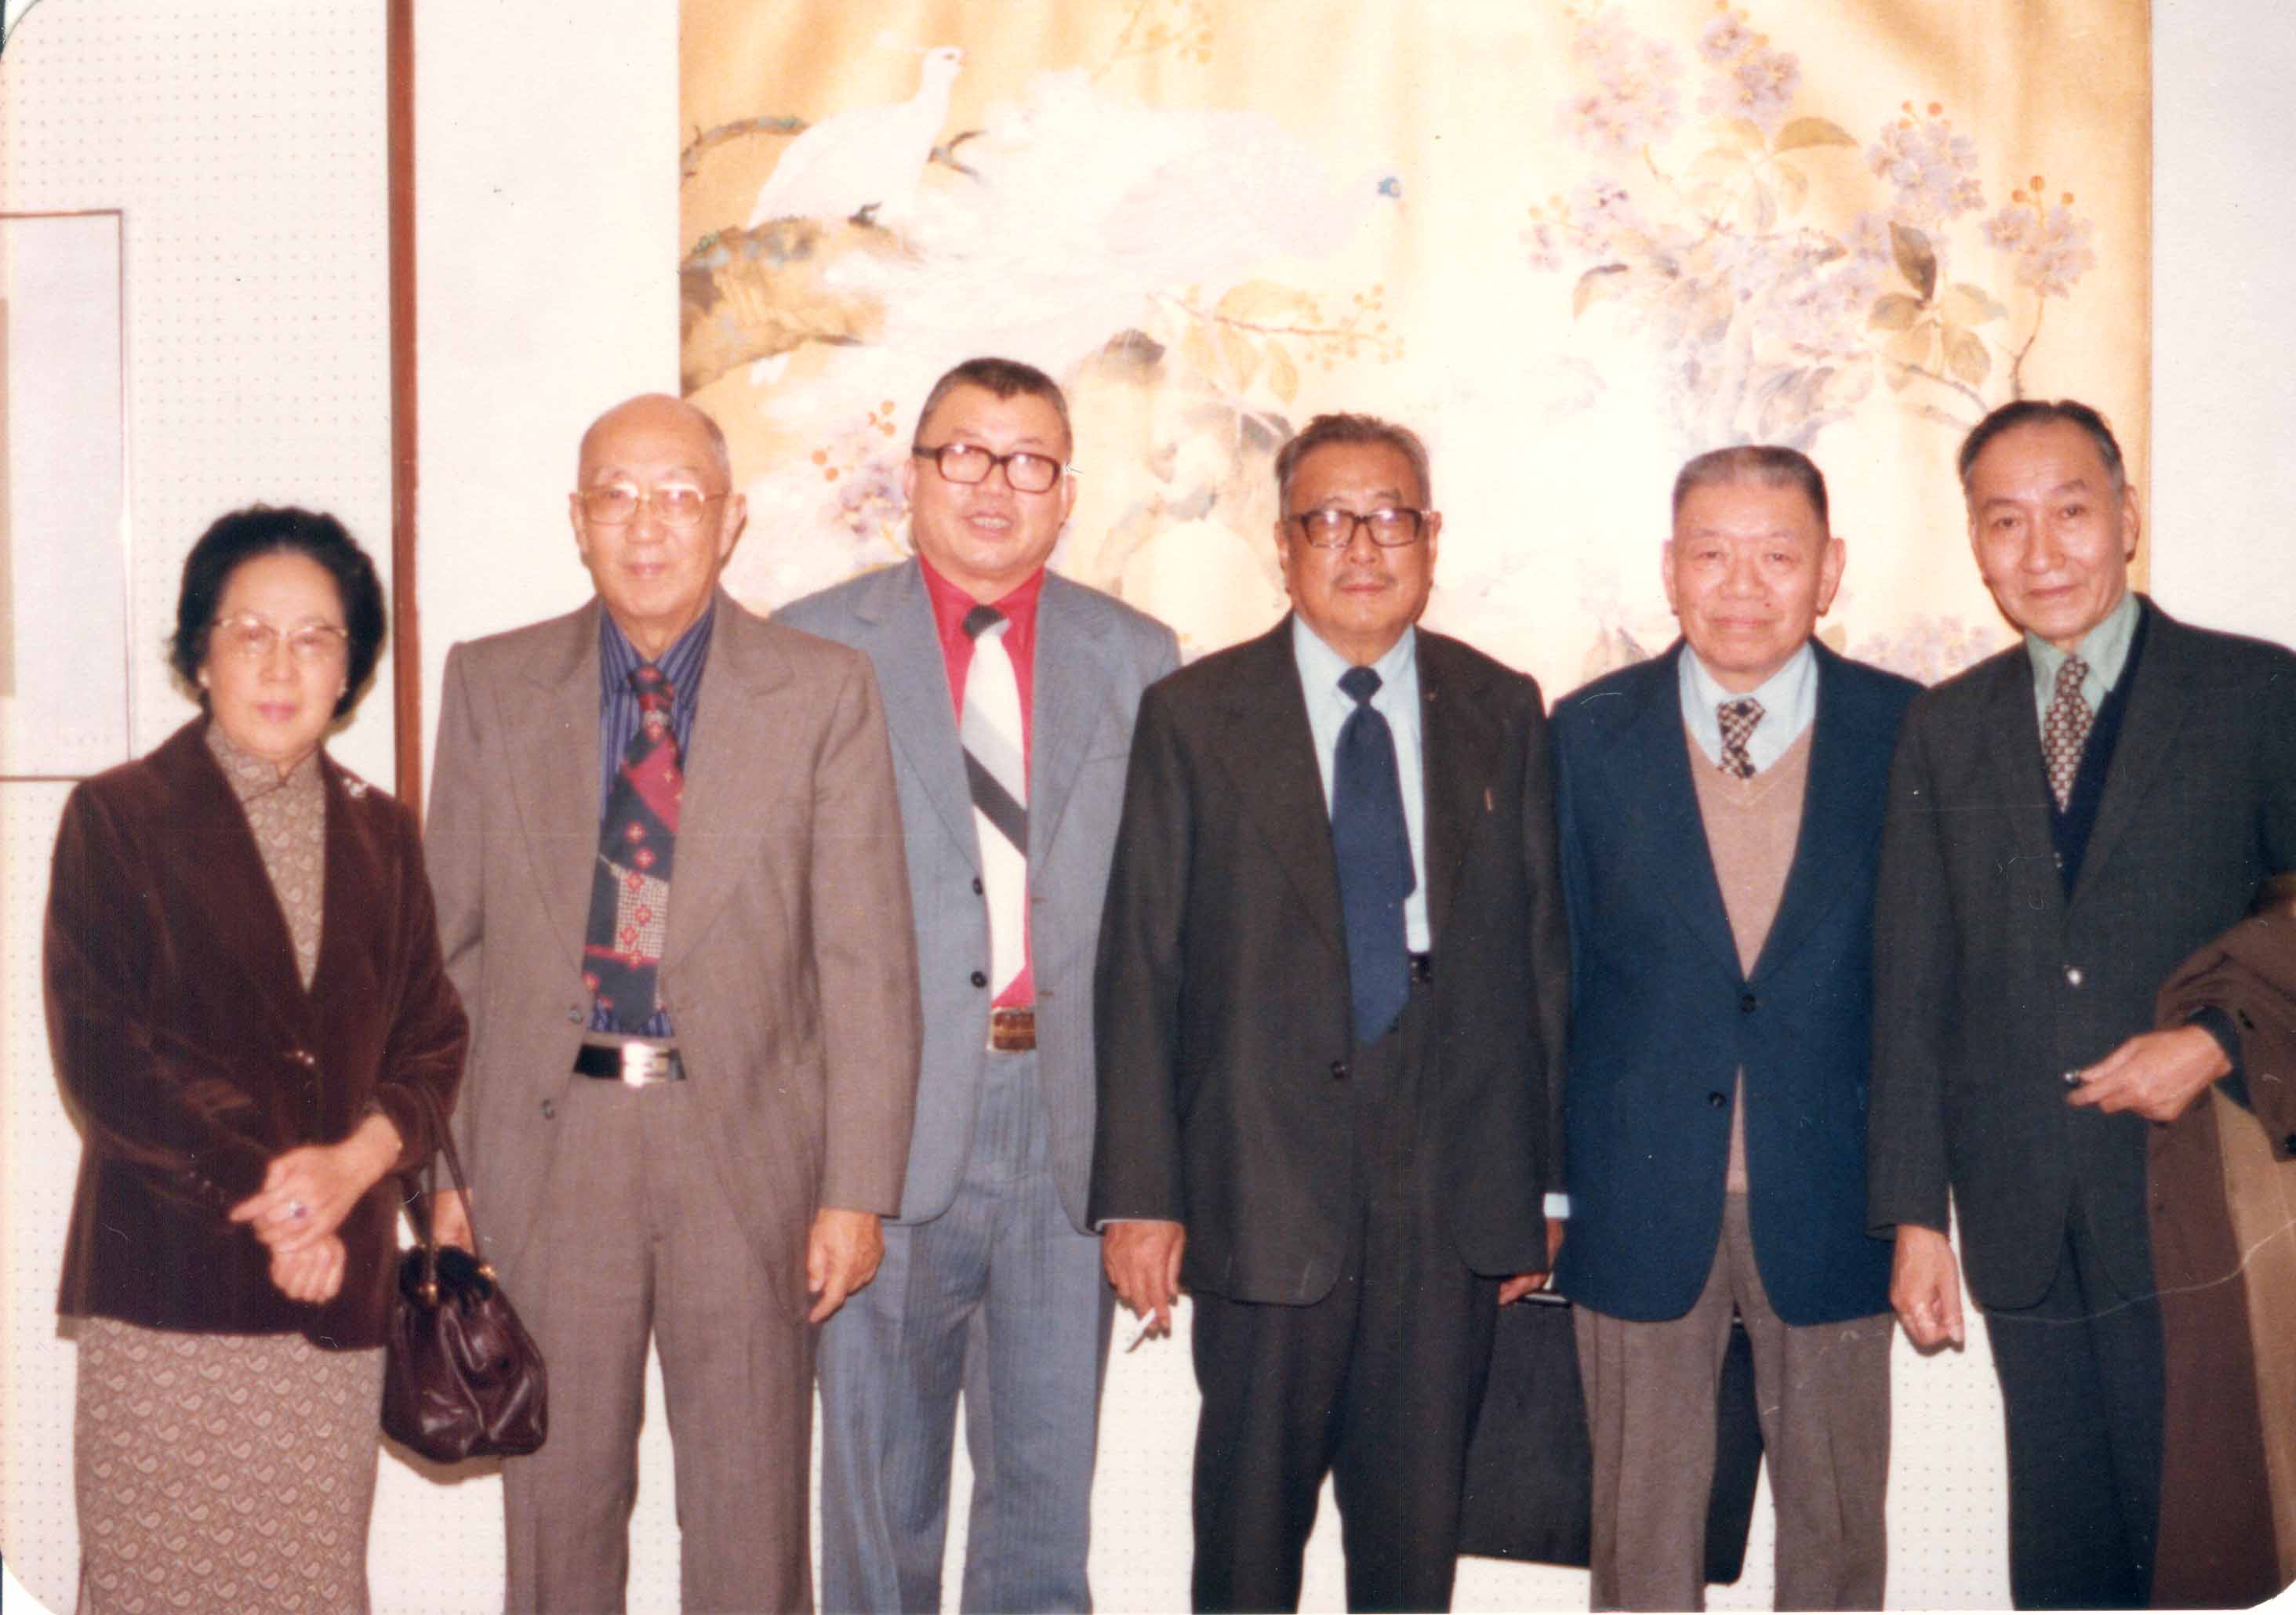 由右至左: 畫家季康、金勤伯教授、臺靜農教授、喻仲林